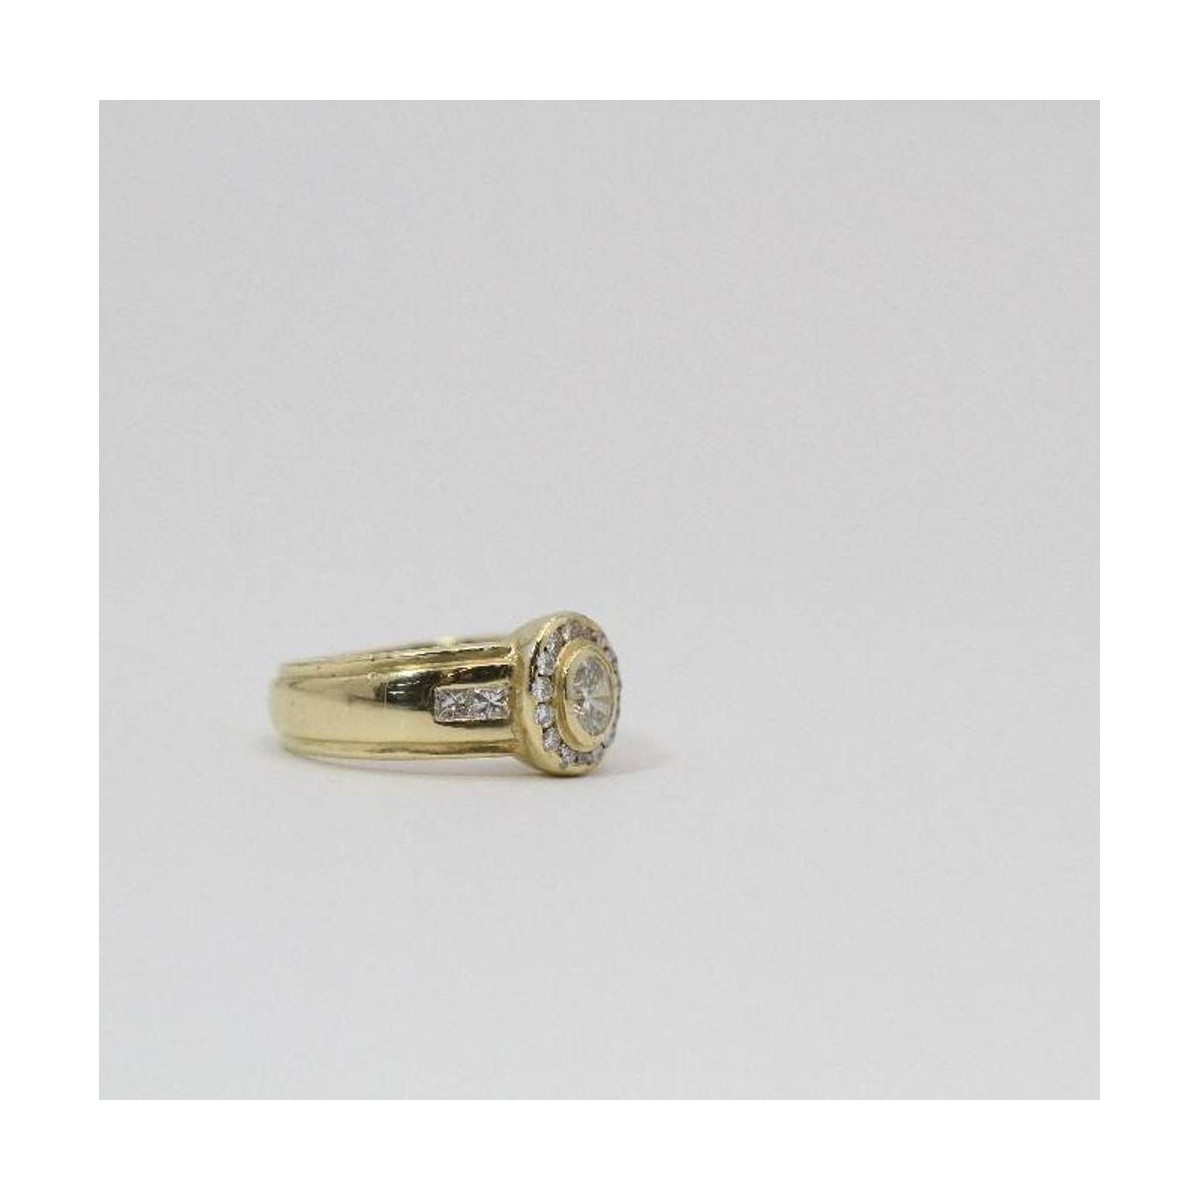 Ten confianza Sympton contraste Comprar Anillo de oro con diamantes de segunda mano E352155